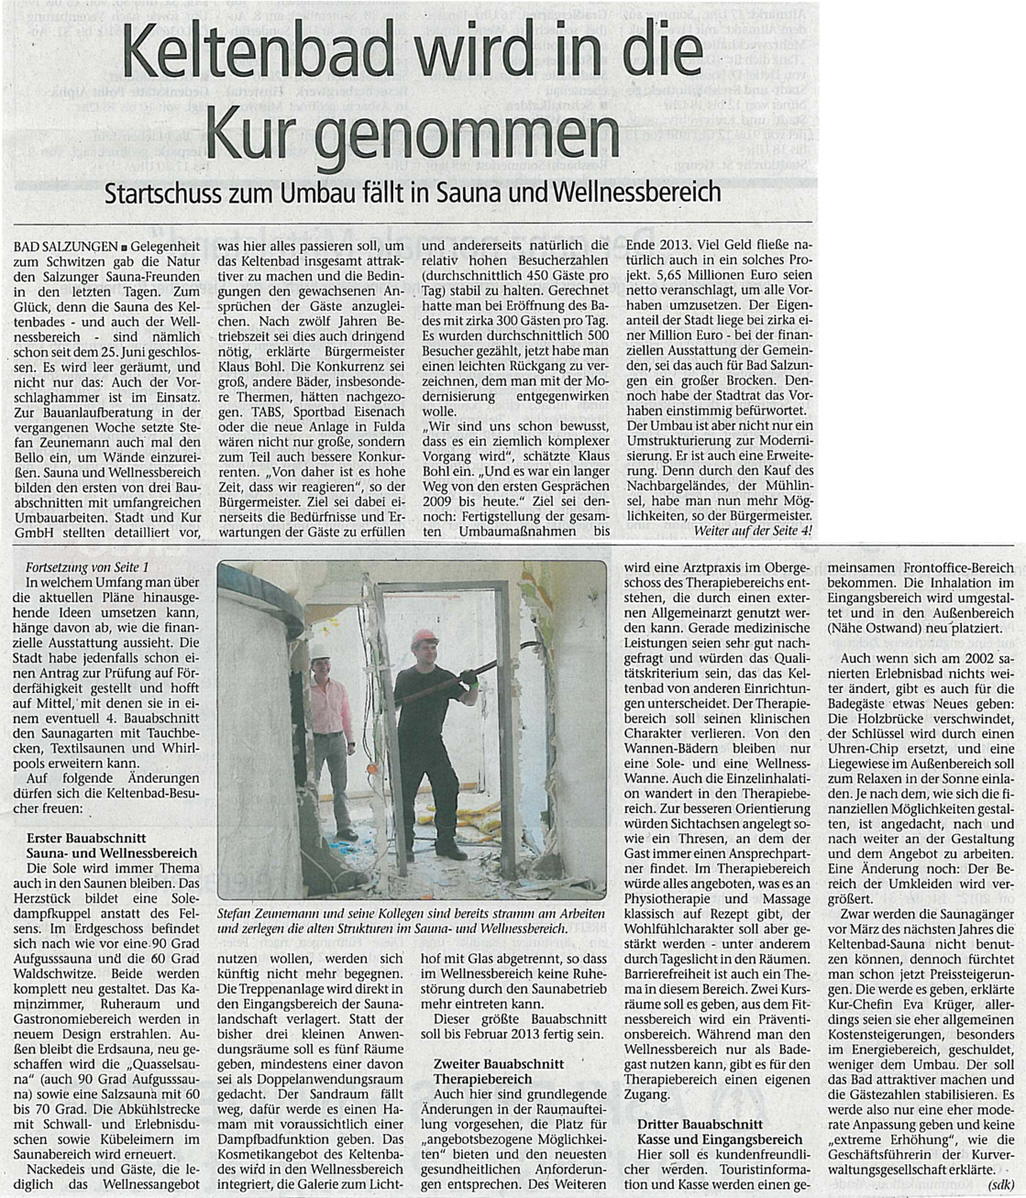 Wochenspiegel (3) vom 04.08.2012